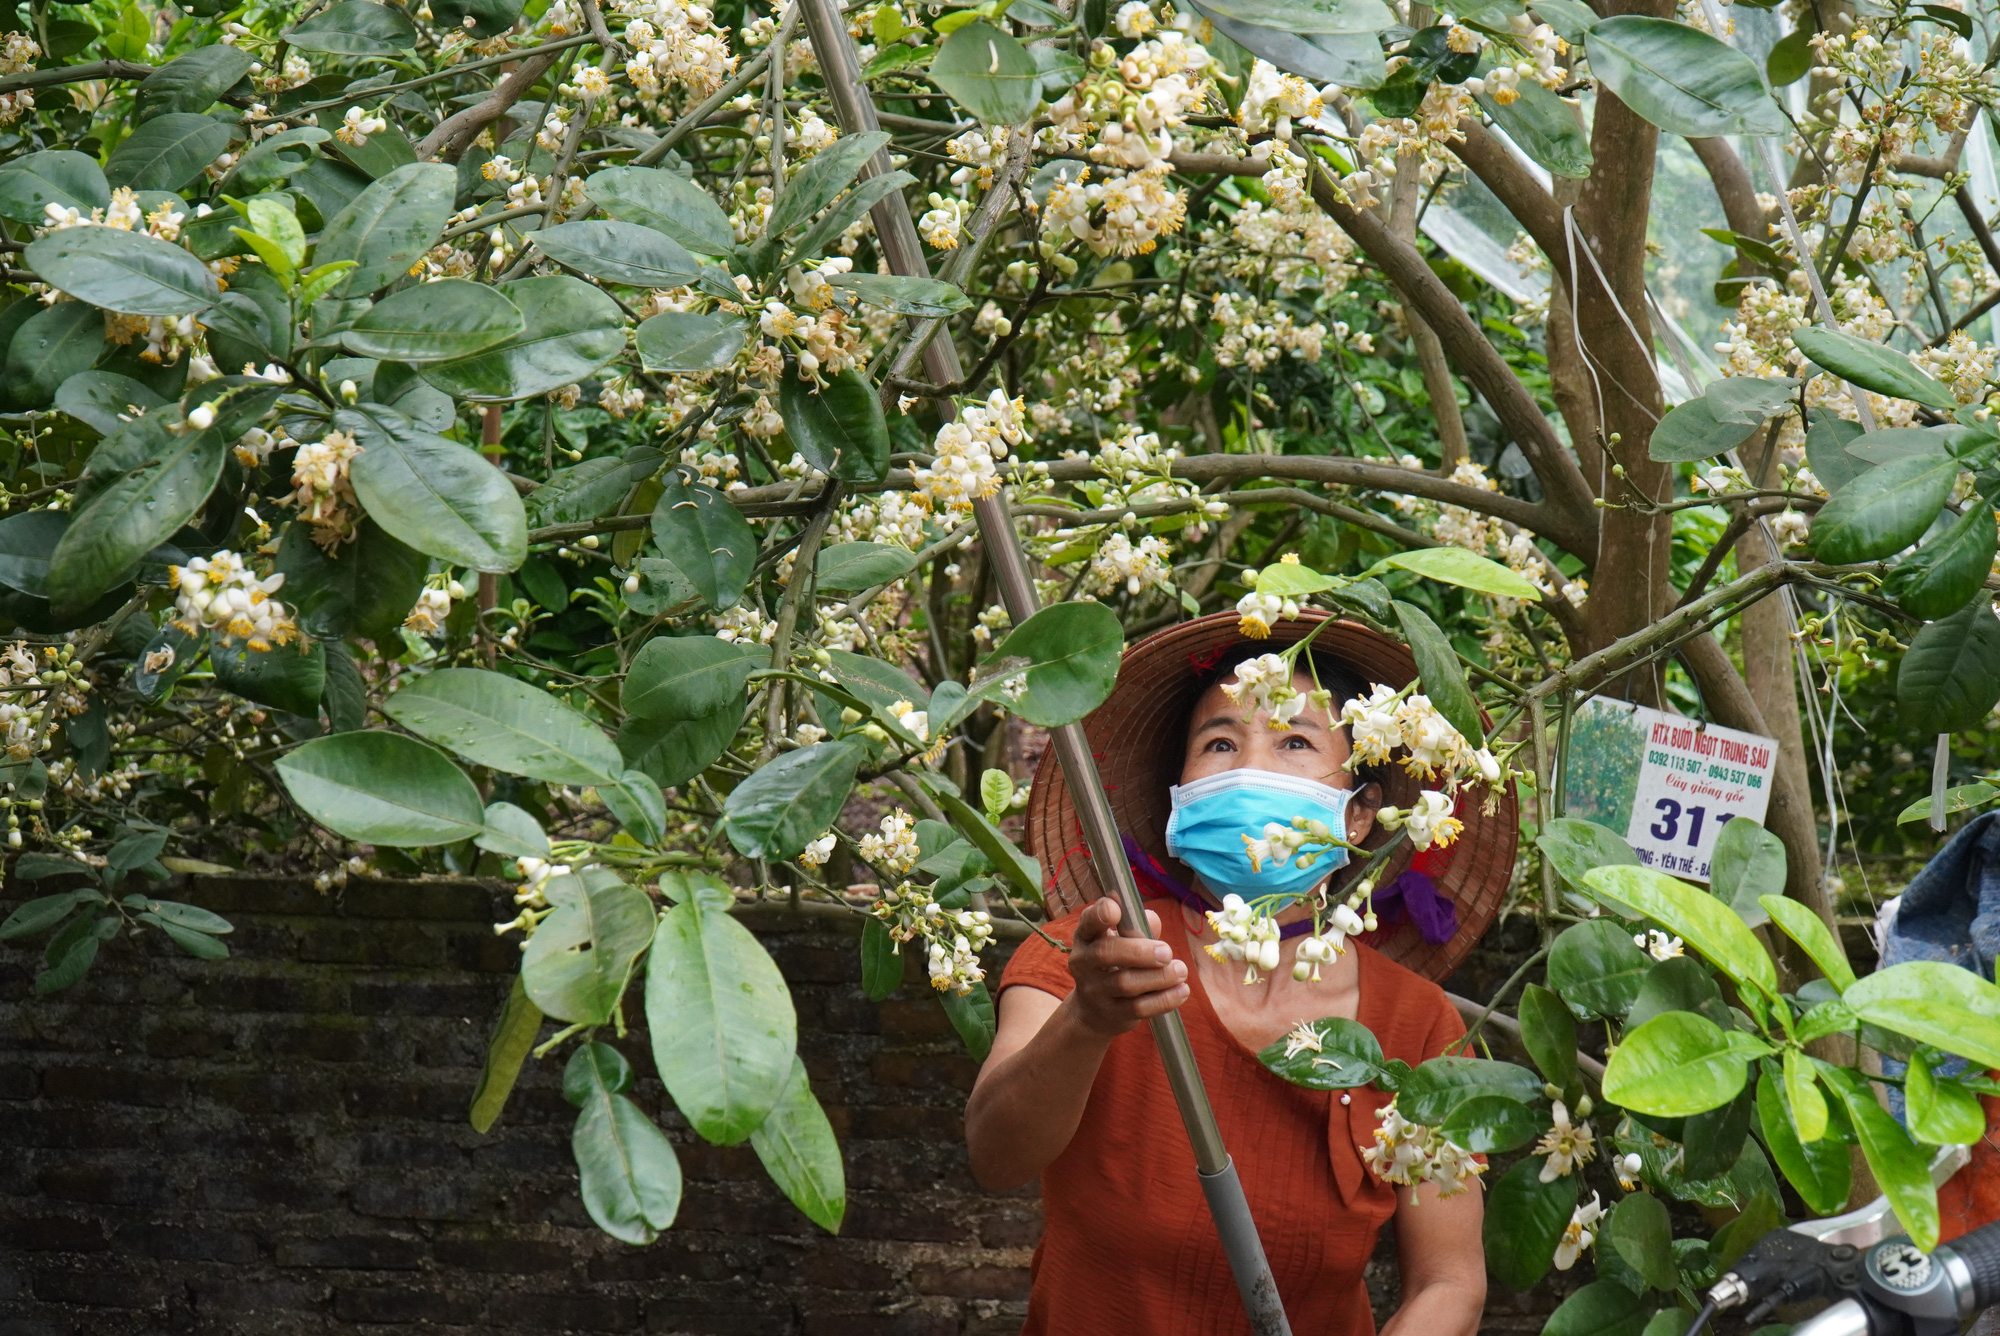 Nông dân Bắc Giang tiết lộ lý do giăng ni lông cho vườn bưởi chớm nở hoa thơm ngát - Ảnh 2.